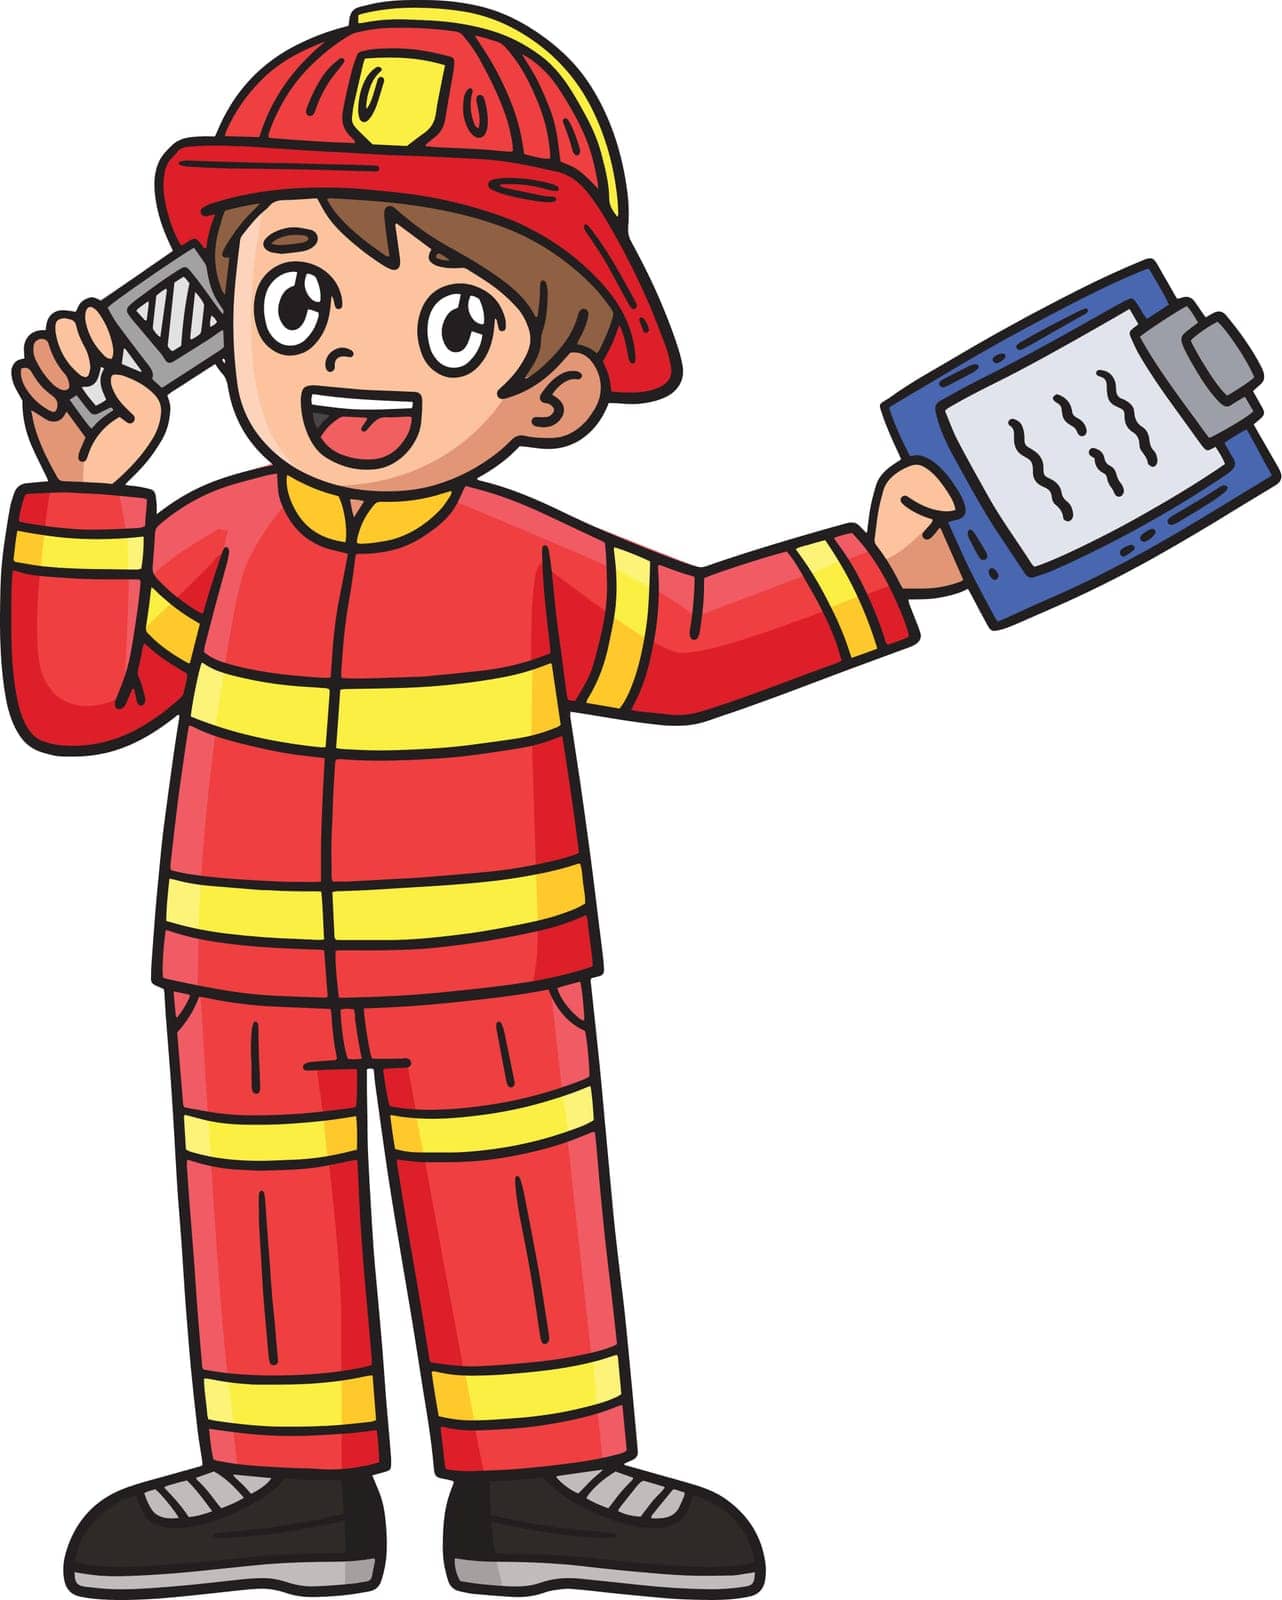 Firefighter Receiving a Call Cartoon Clipart by abbydesign